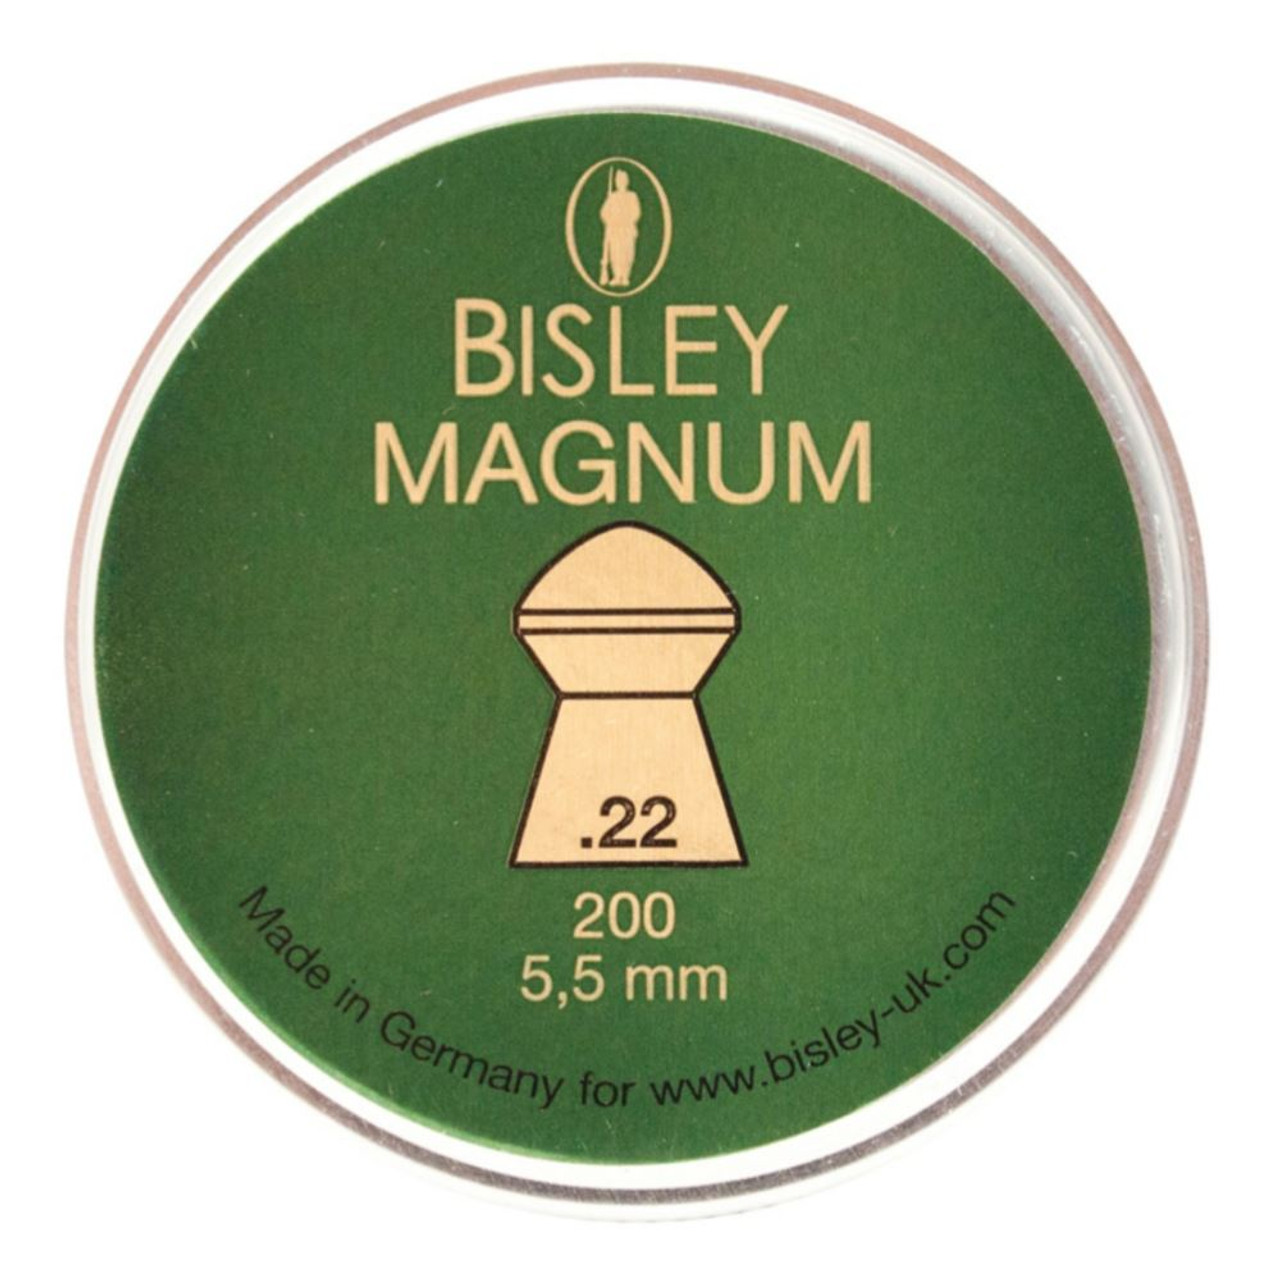 Bisley Magnum .22 Tin of 200 Airgun Pellets